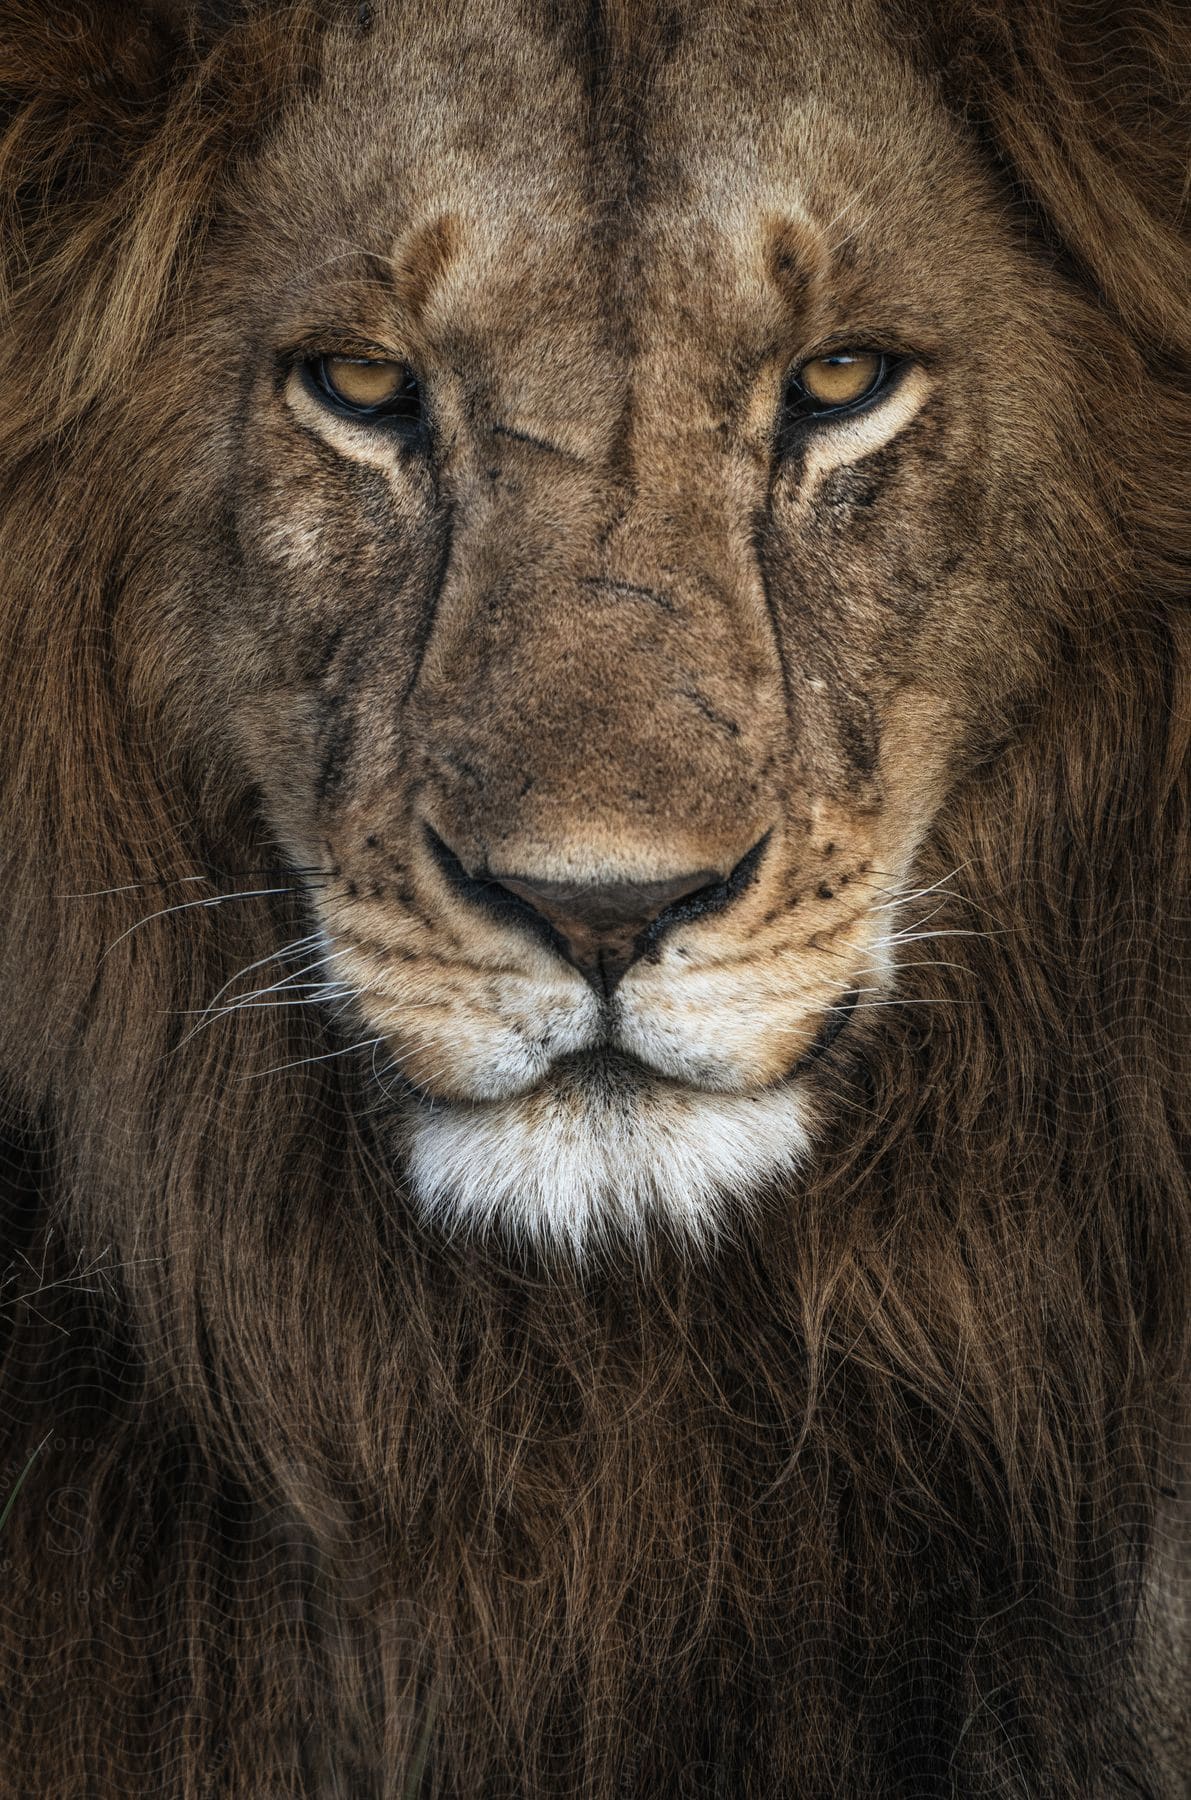 Face of a lion.